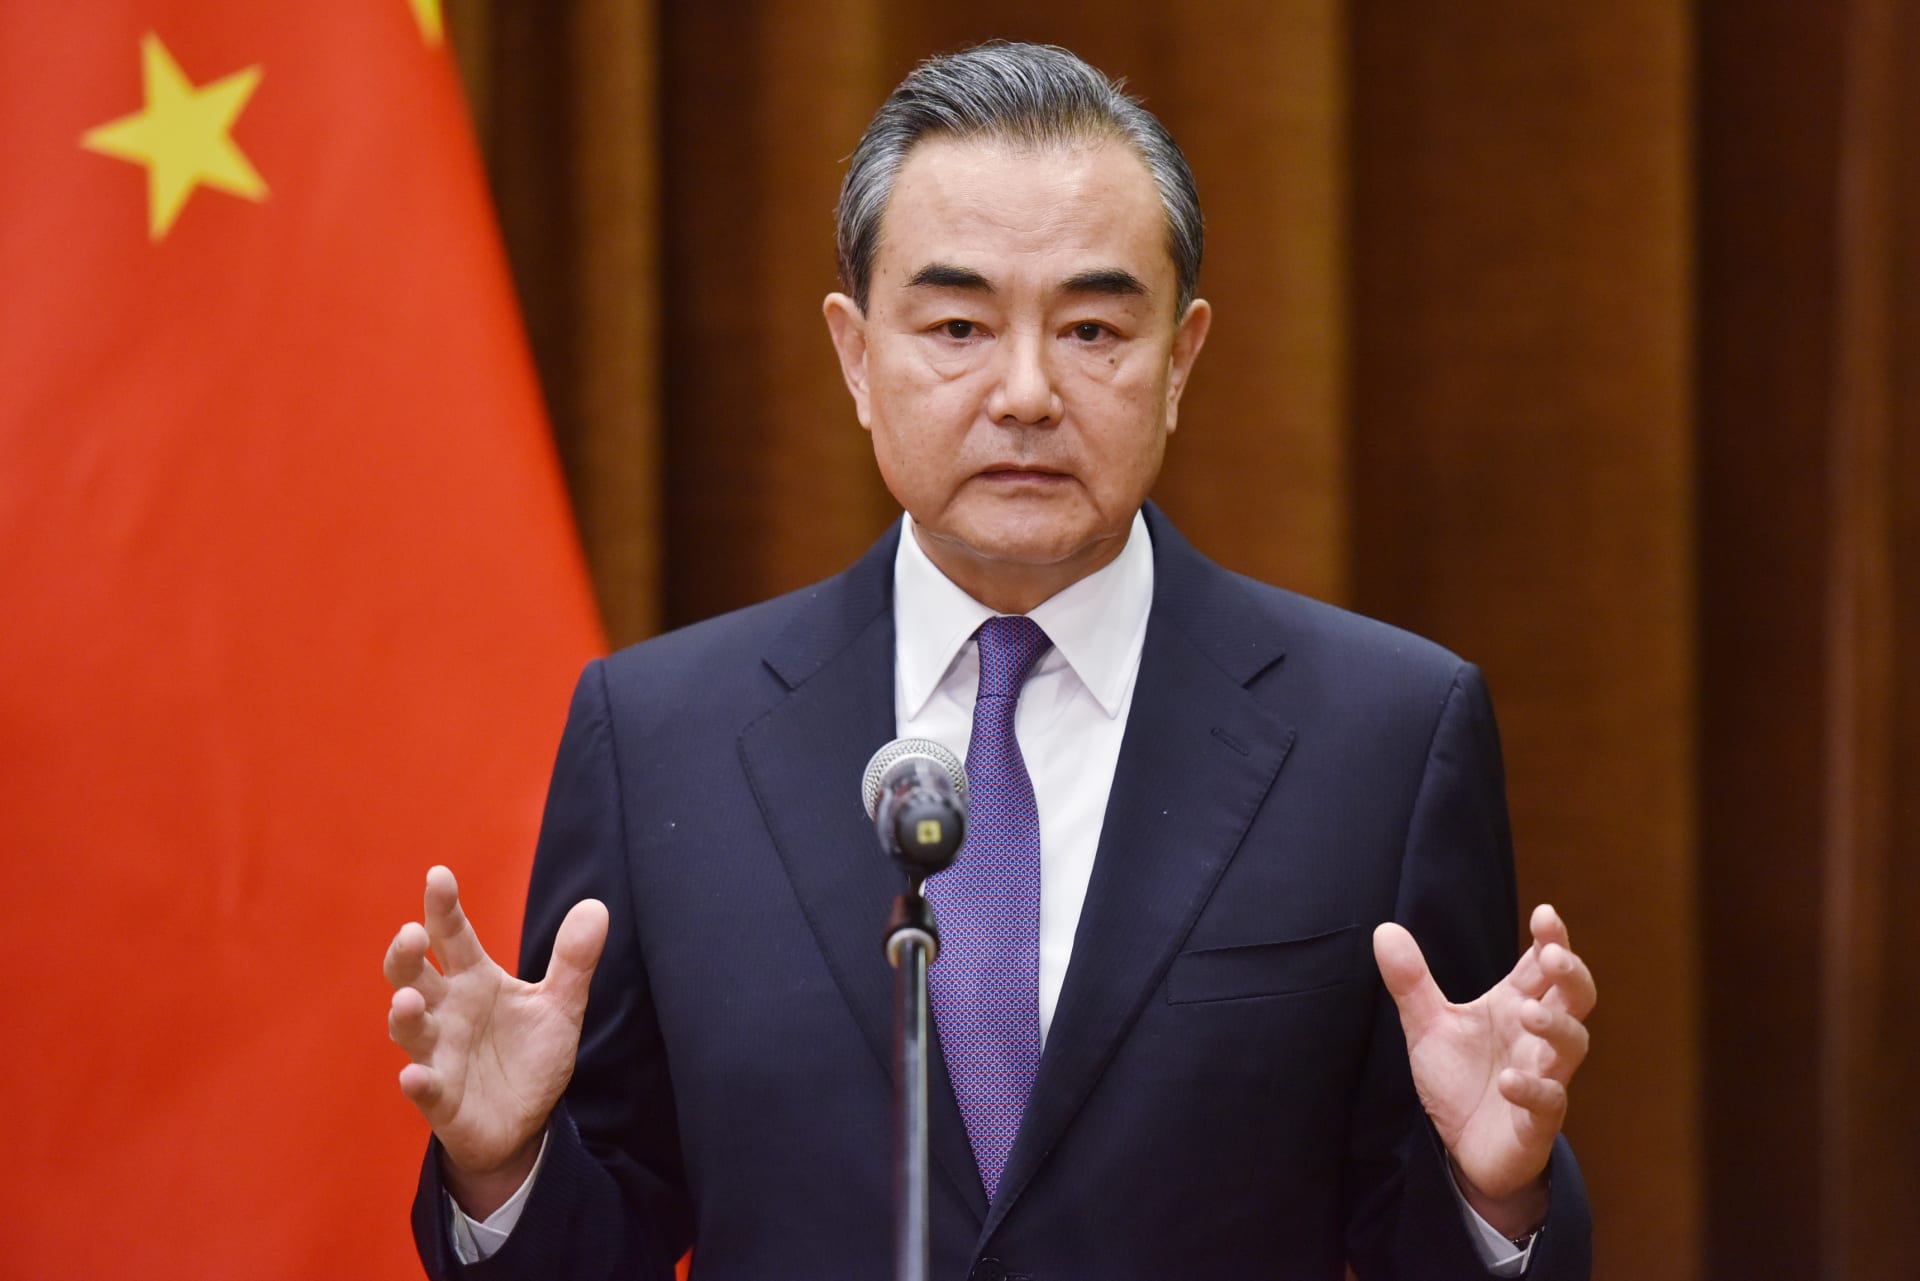 الصين تدعو أمريكا إلى وقف "سياسة الاحتواء" و"البلطجة أحادية الجانب"